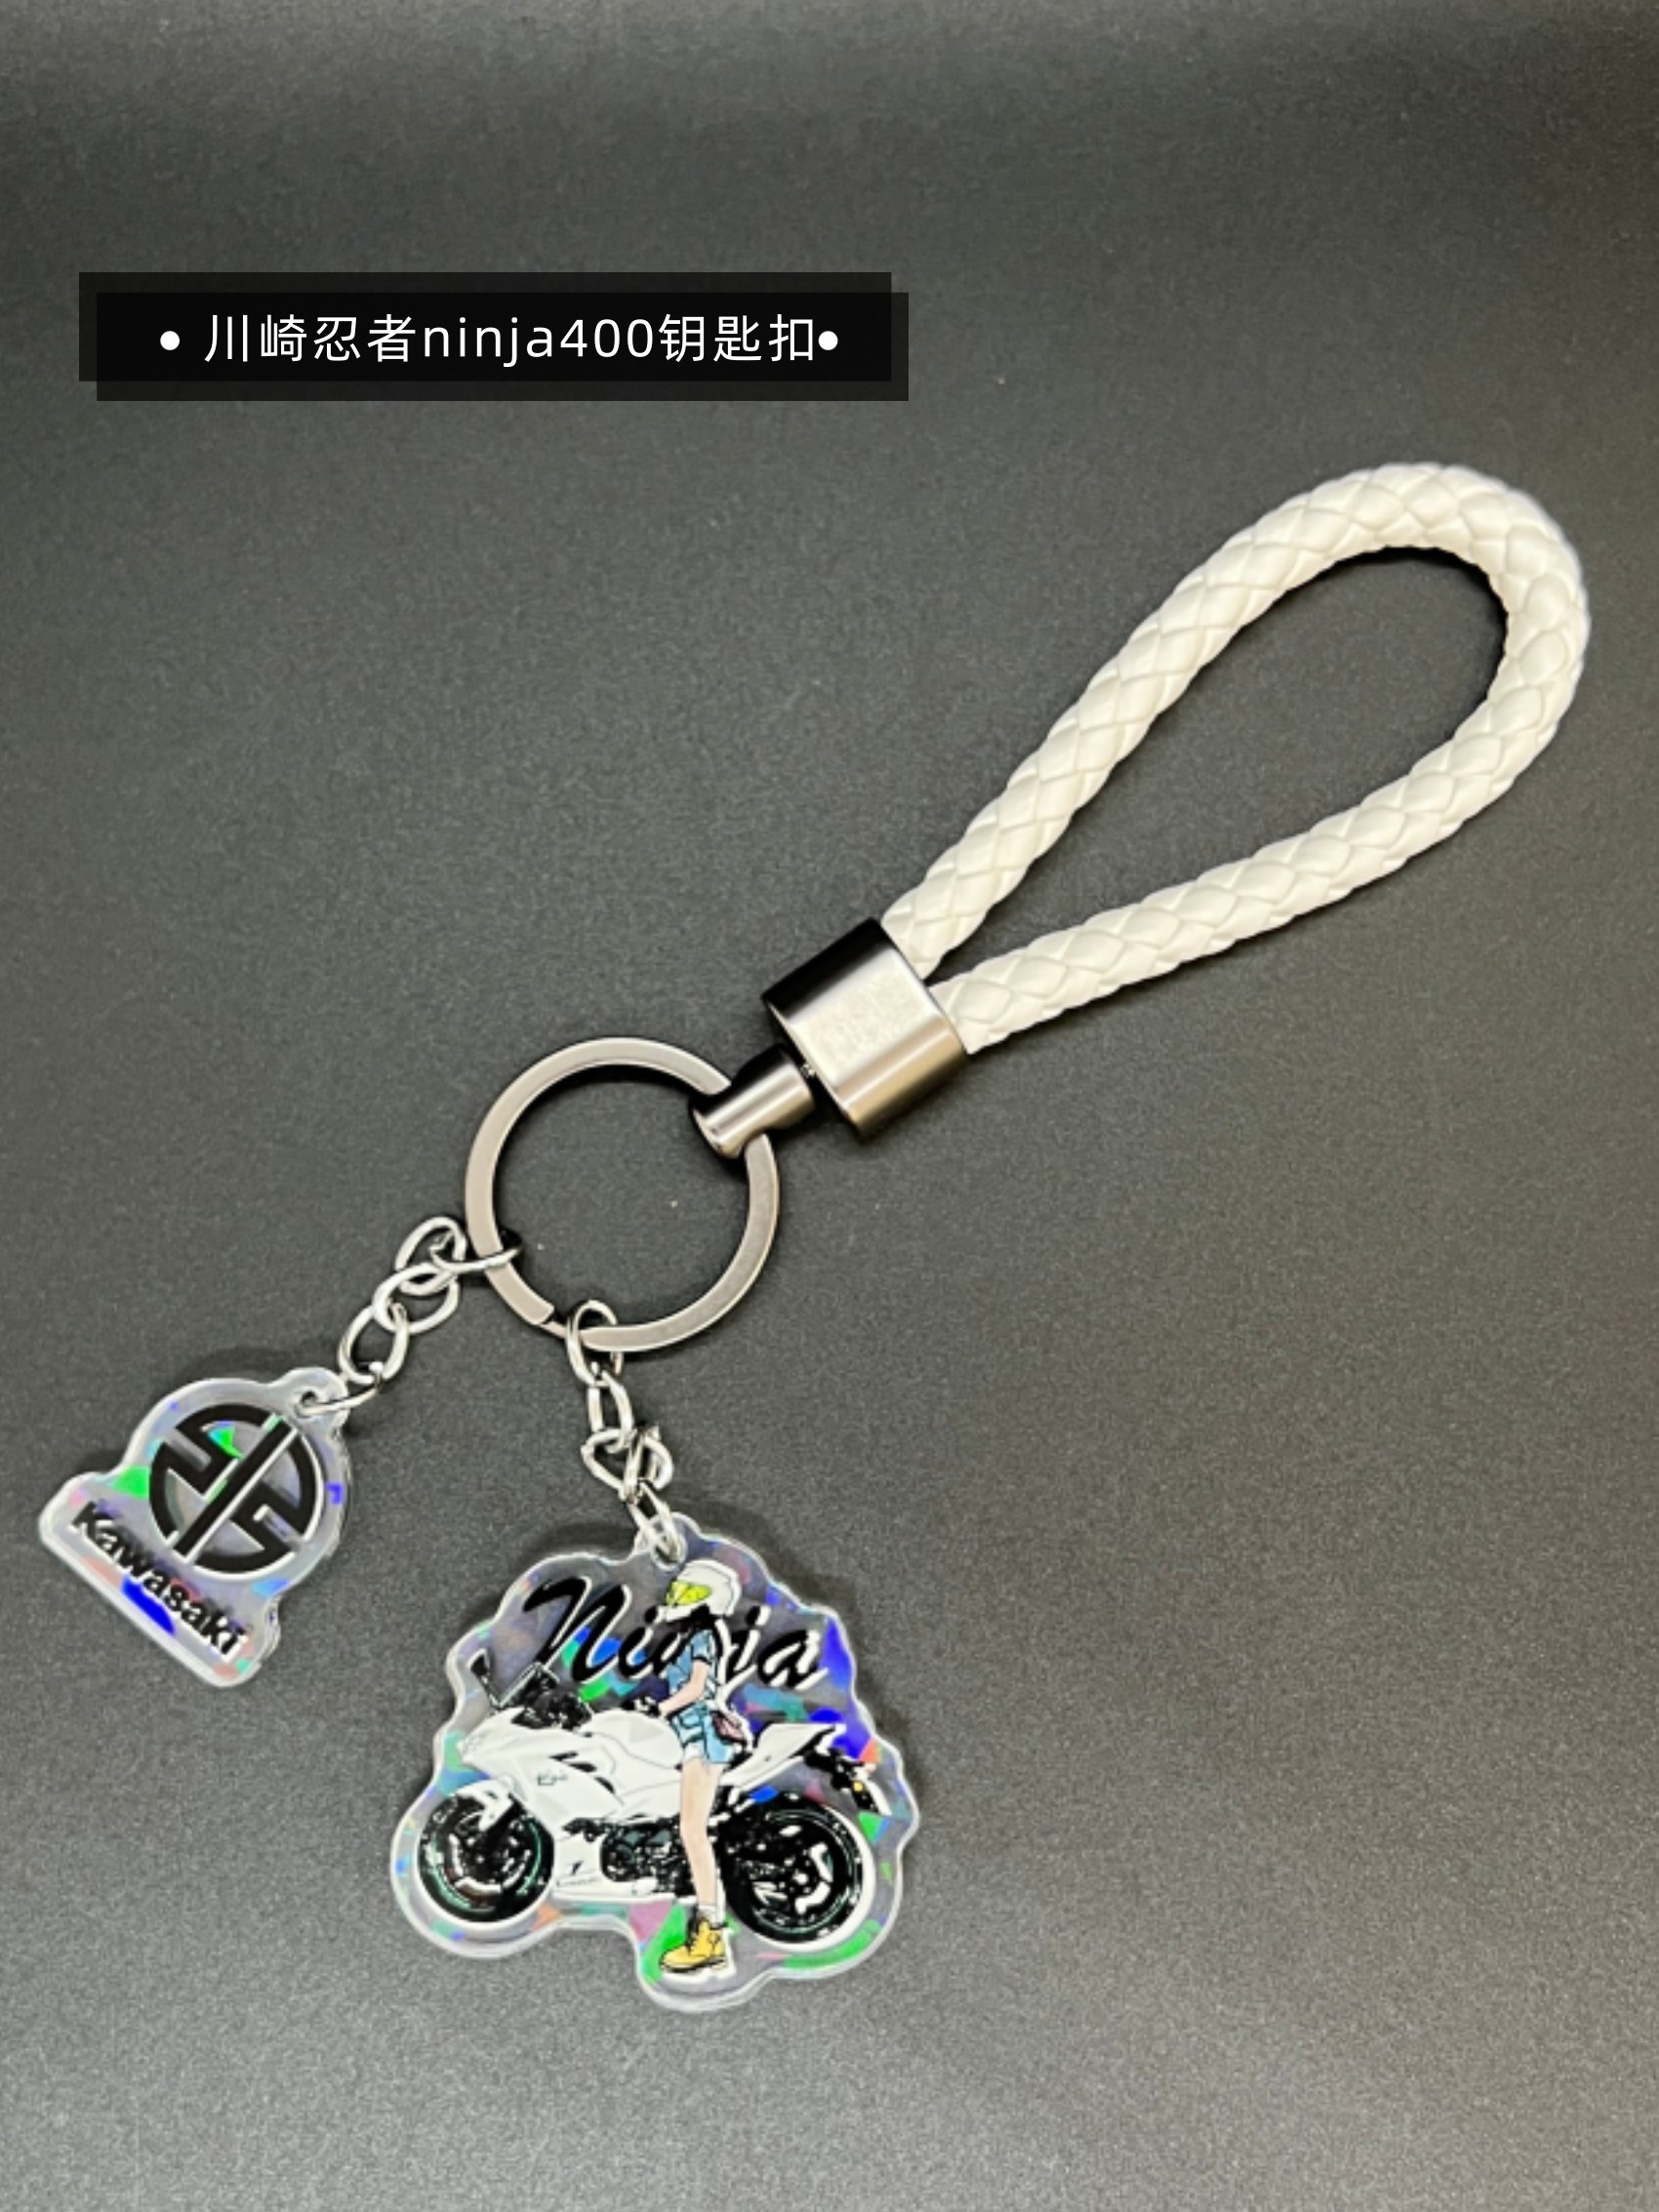 川崎忍者ninja400摩托造型钥匙扣钥匙链包包机车挂件改装钥匙挂饰